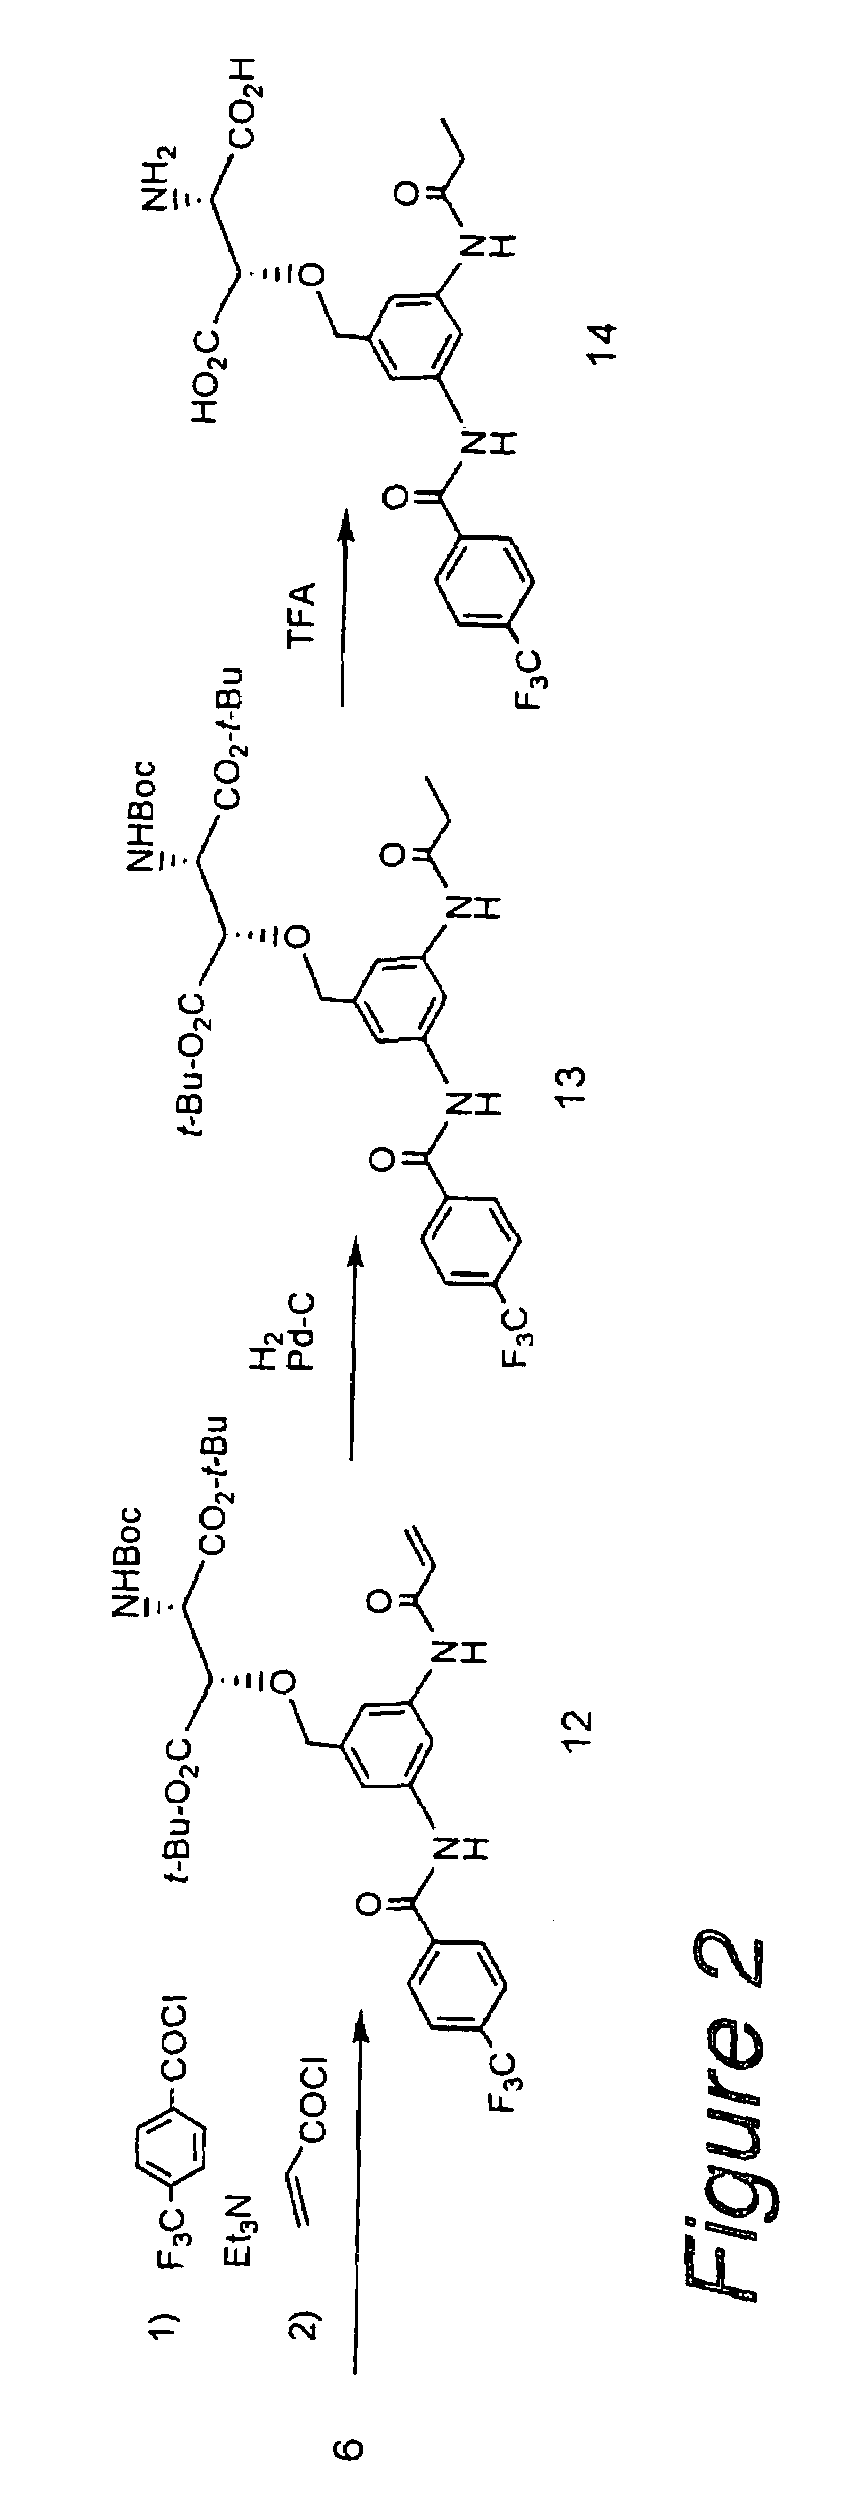 β-Benzyloxyaspartic acid derivatives having two substituents on their benzene rings